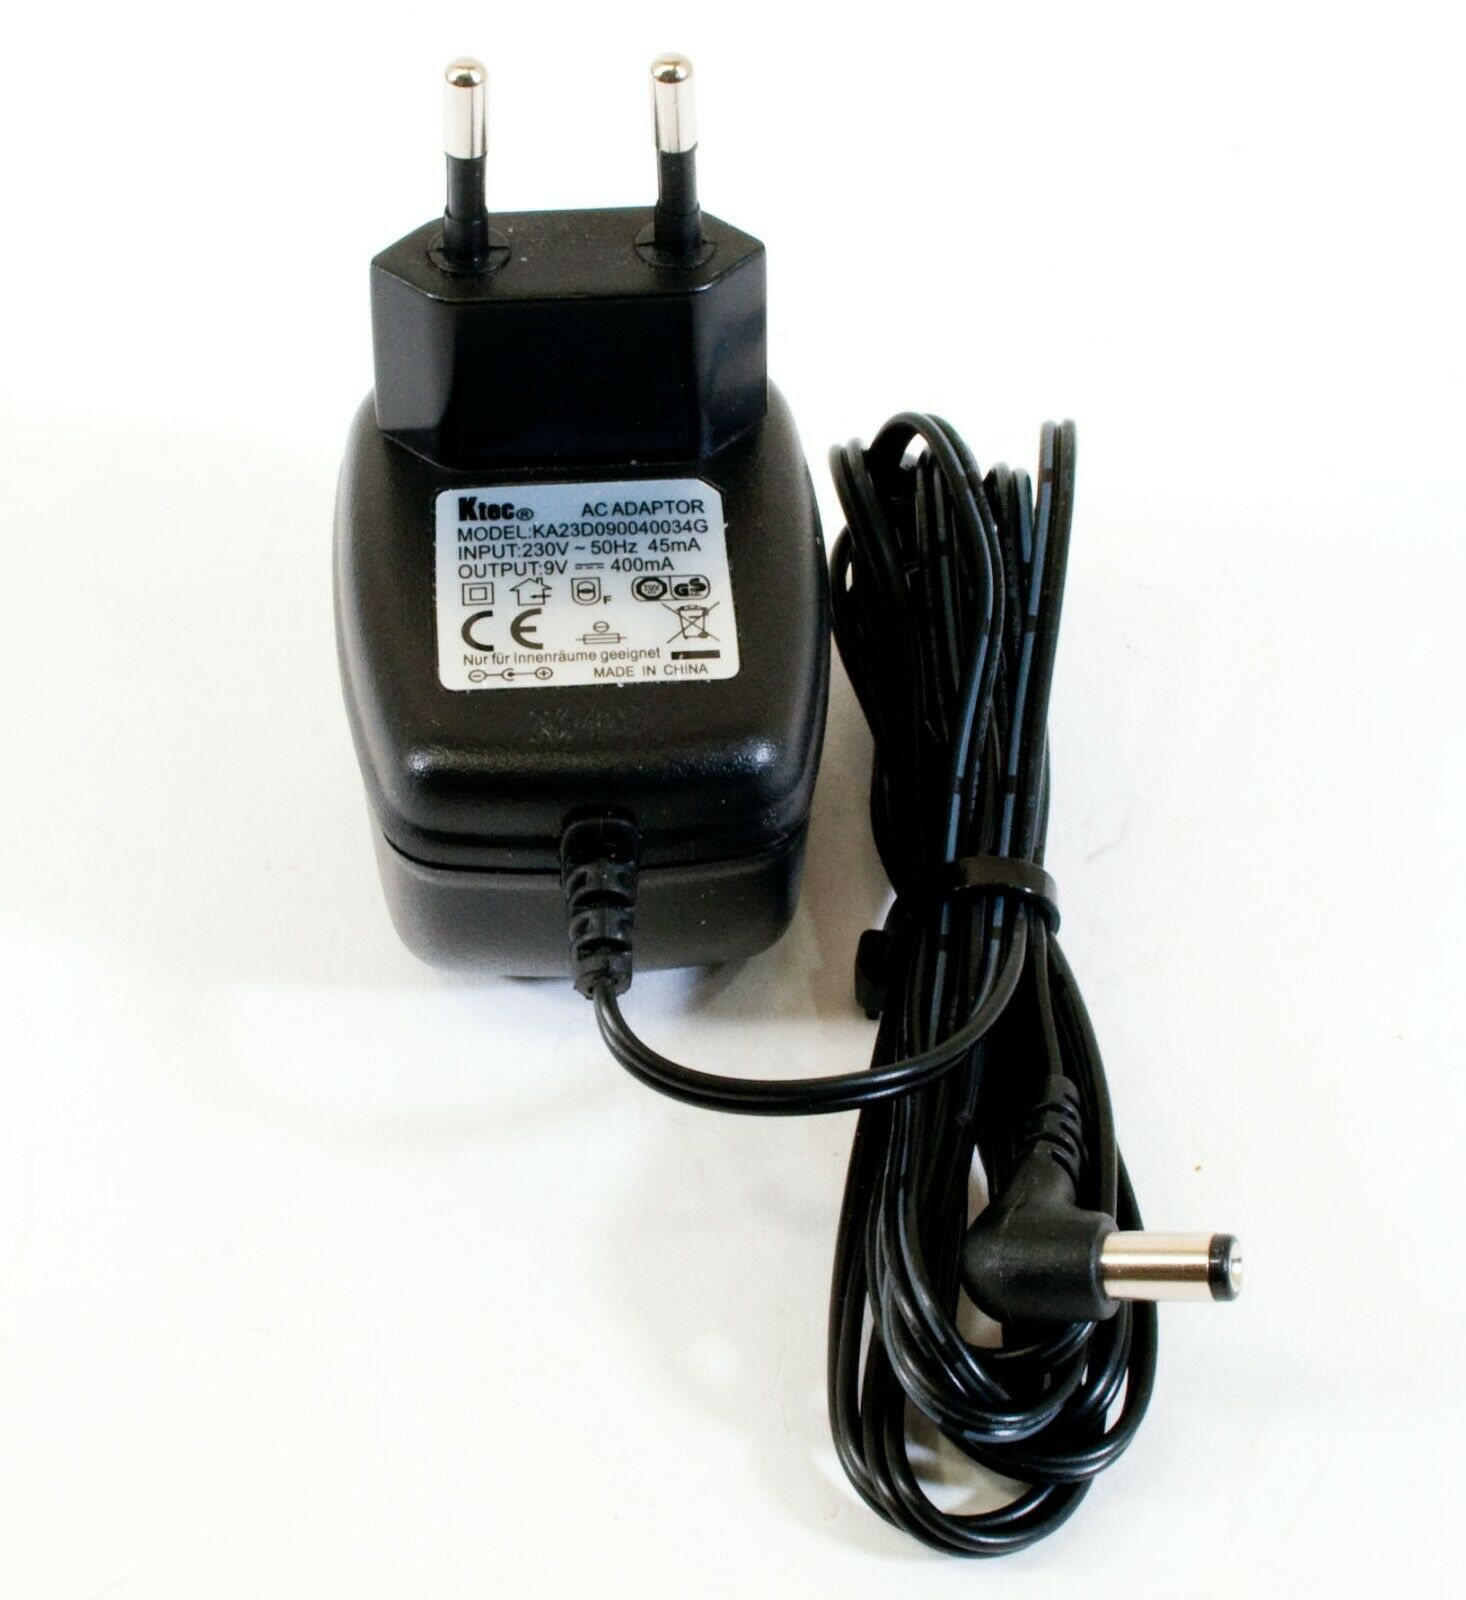 Ktec KA23D090040034G AC Adapter 9V 400mA Original Power Supply Output Current: 400 mA Voltage: 9 V